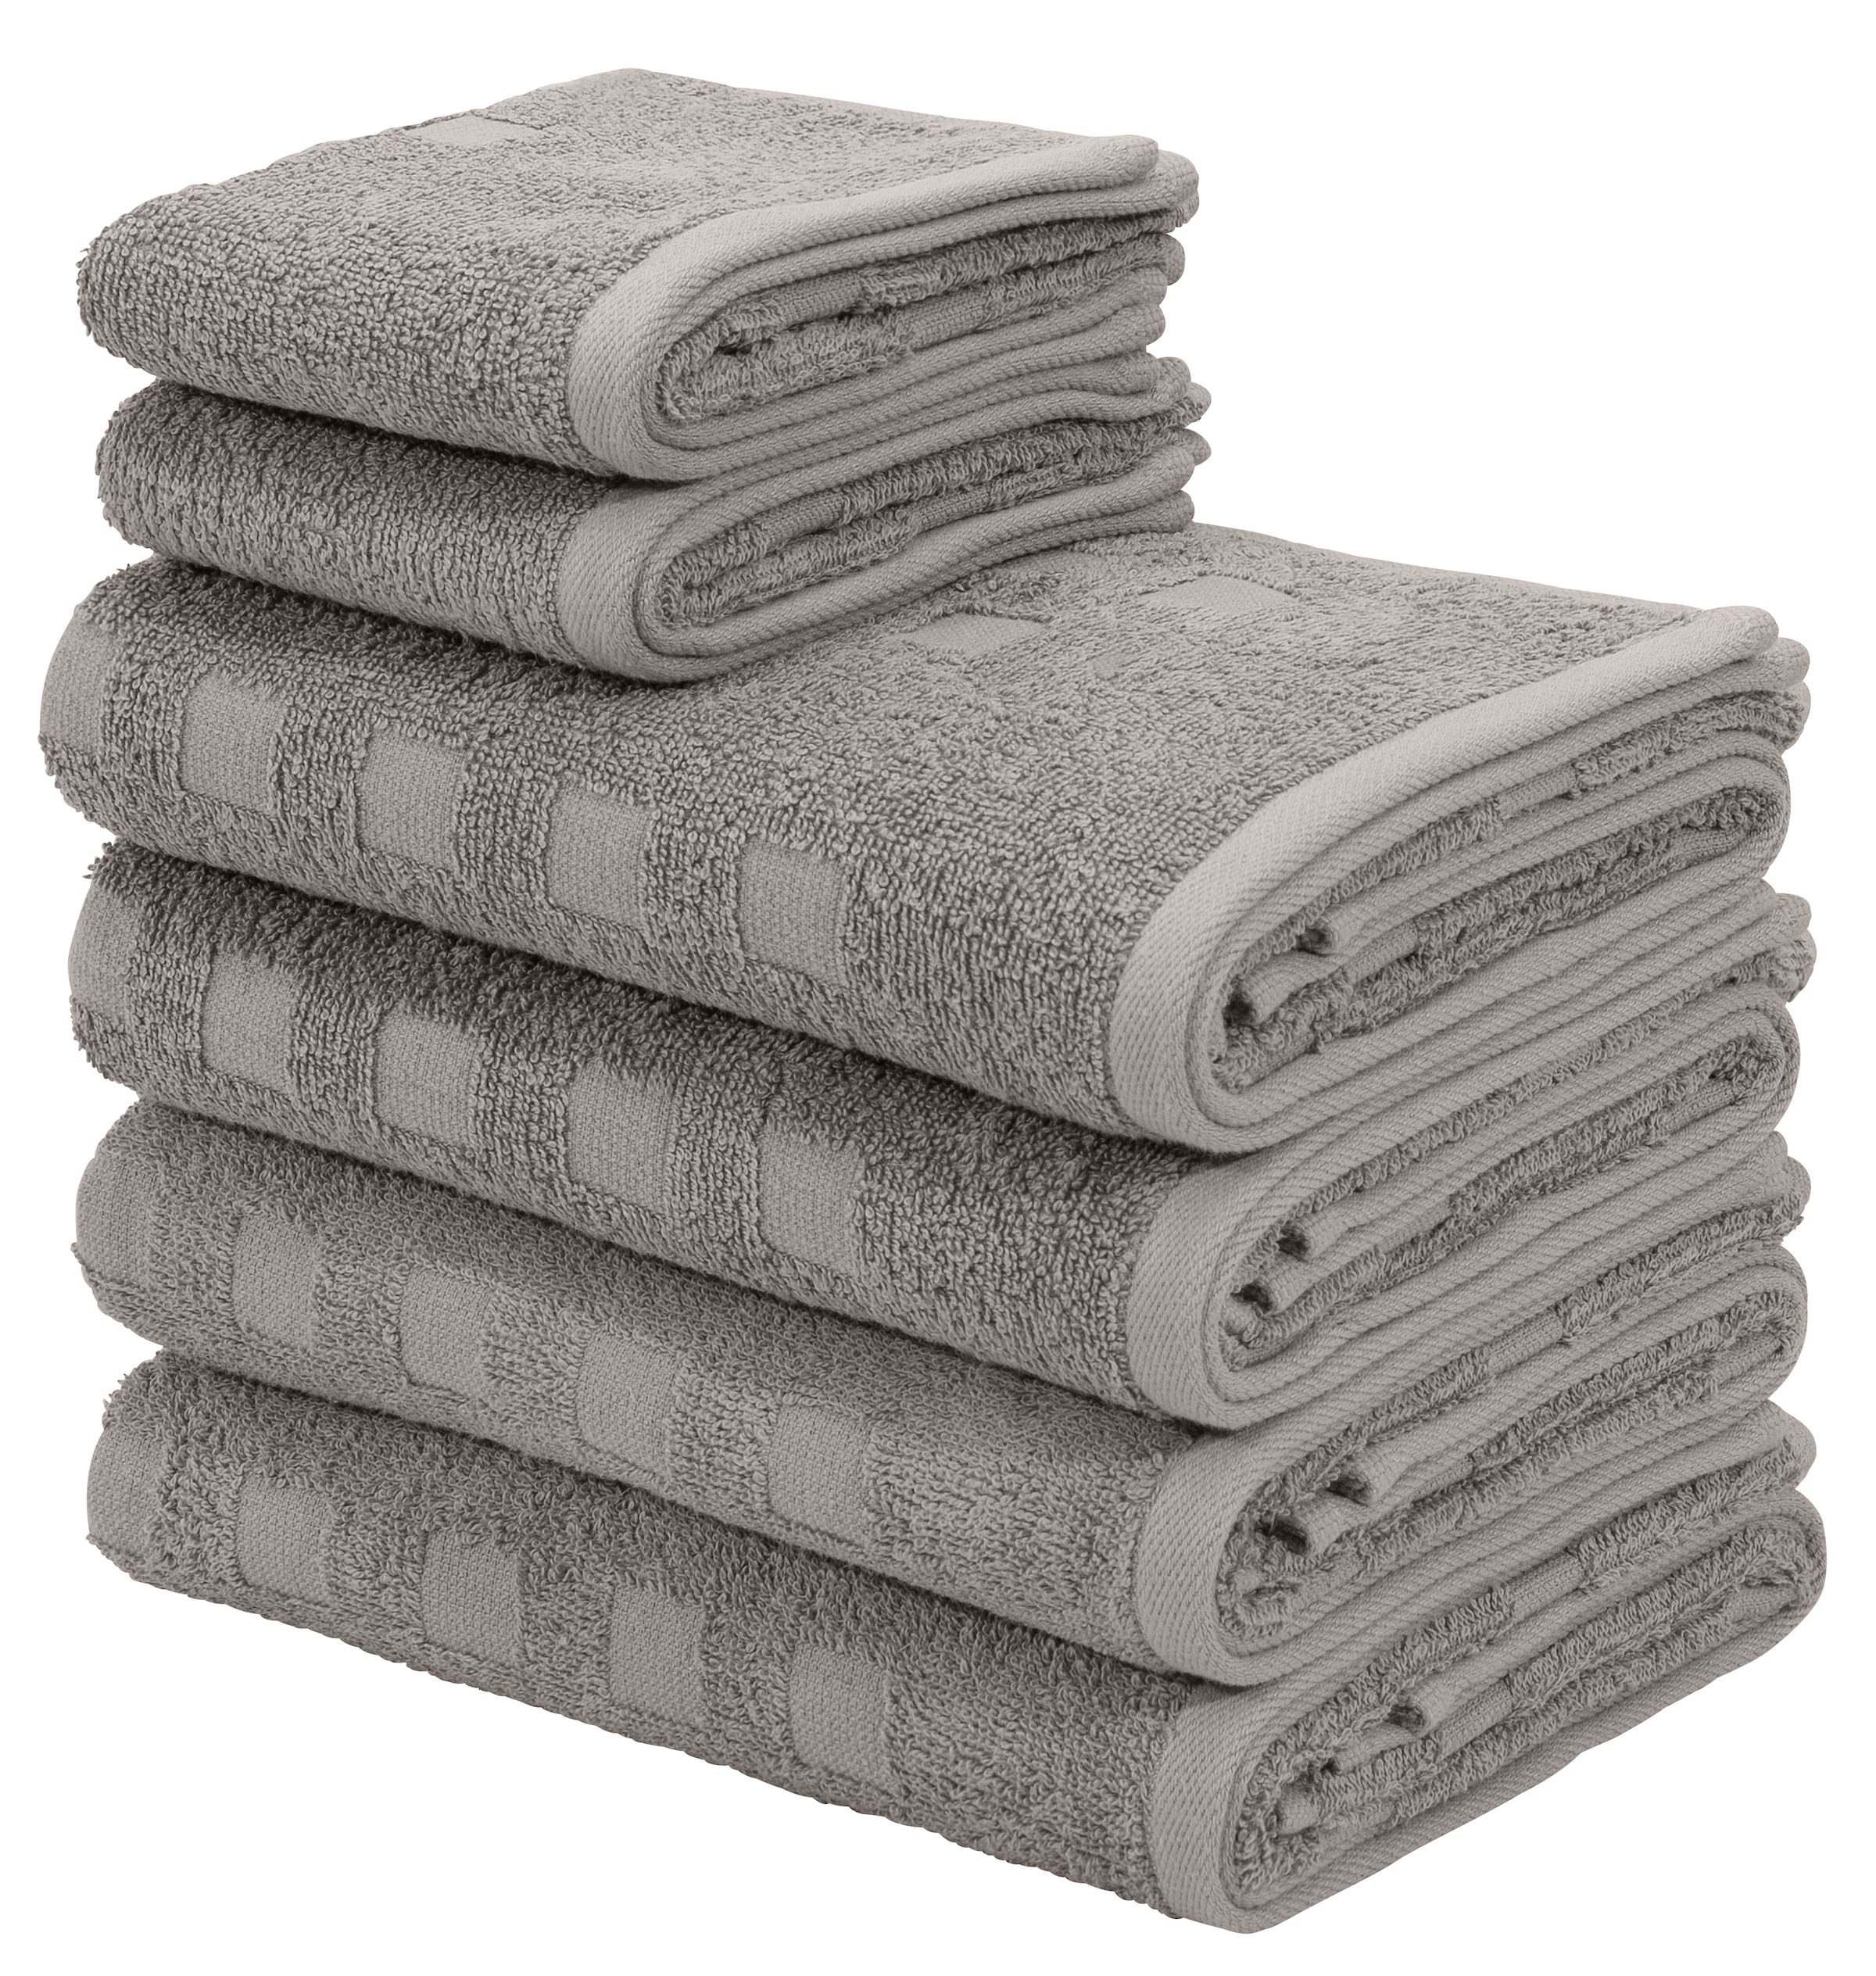 Handtuch-Sets online kaufen bei – Quelle liefern Wir